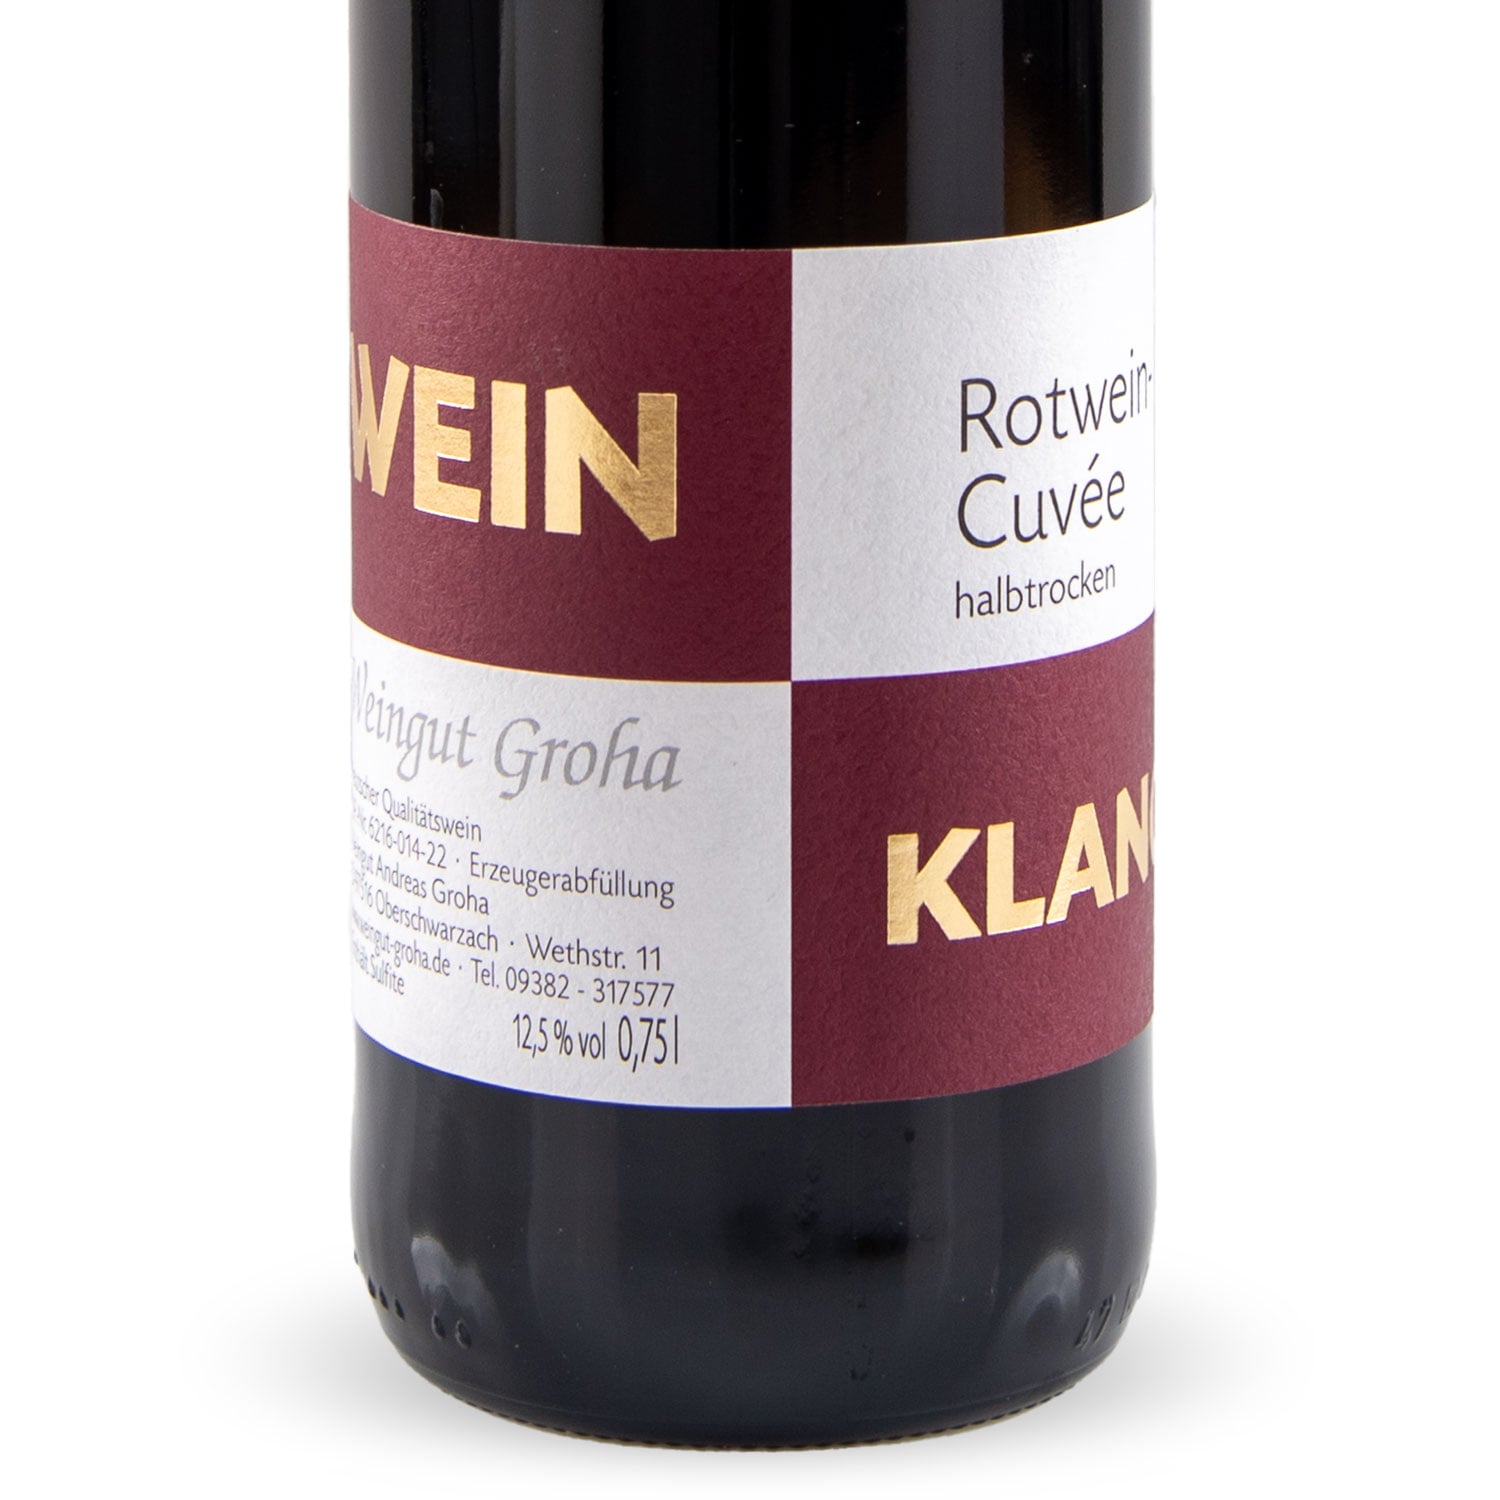 Weinklang - Rotwein Cuvée halbtrocken